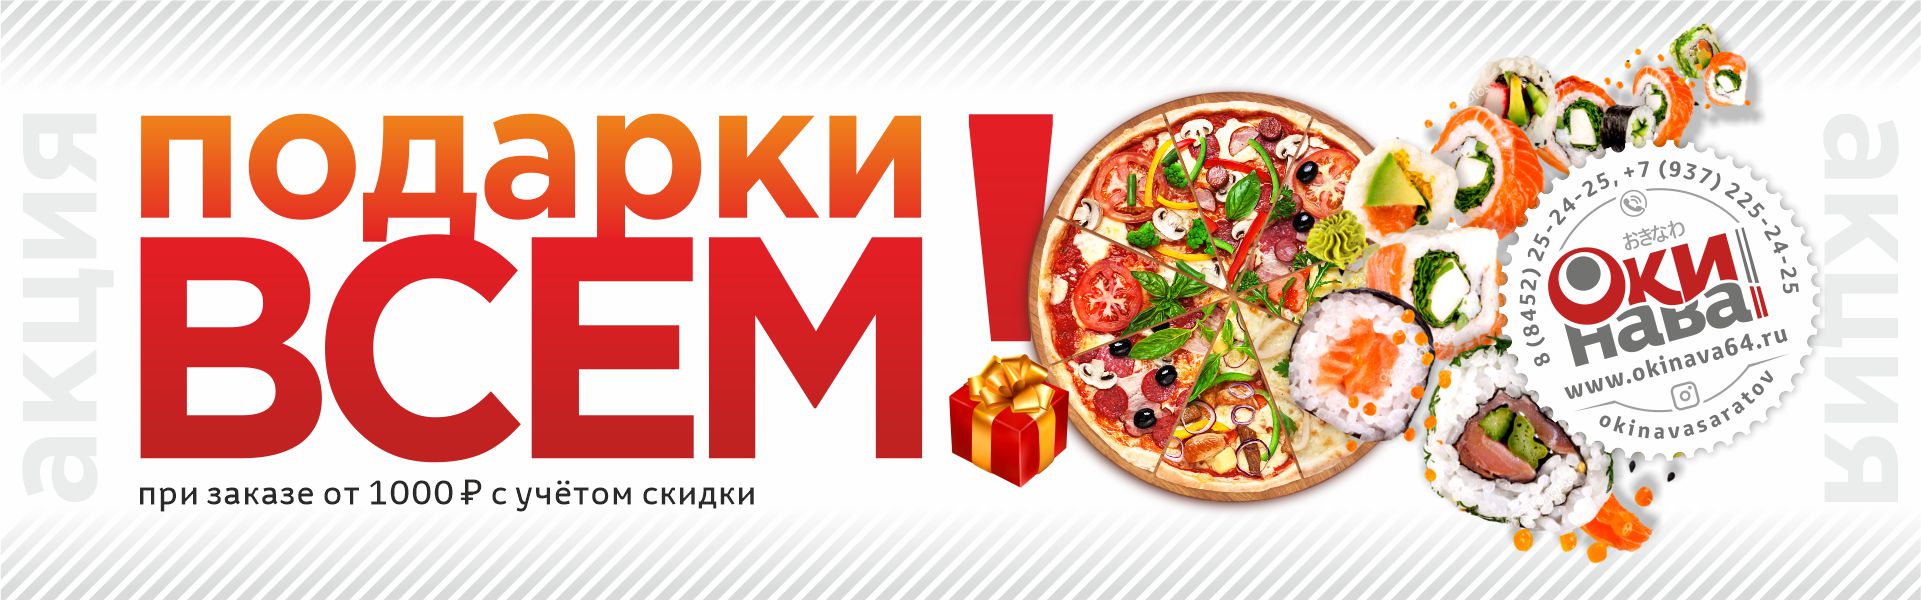 Заказать суши и пиццу в красноярске с бесплатной фото 50